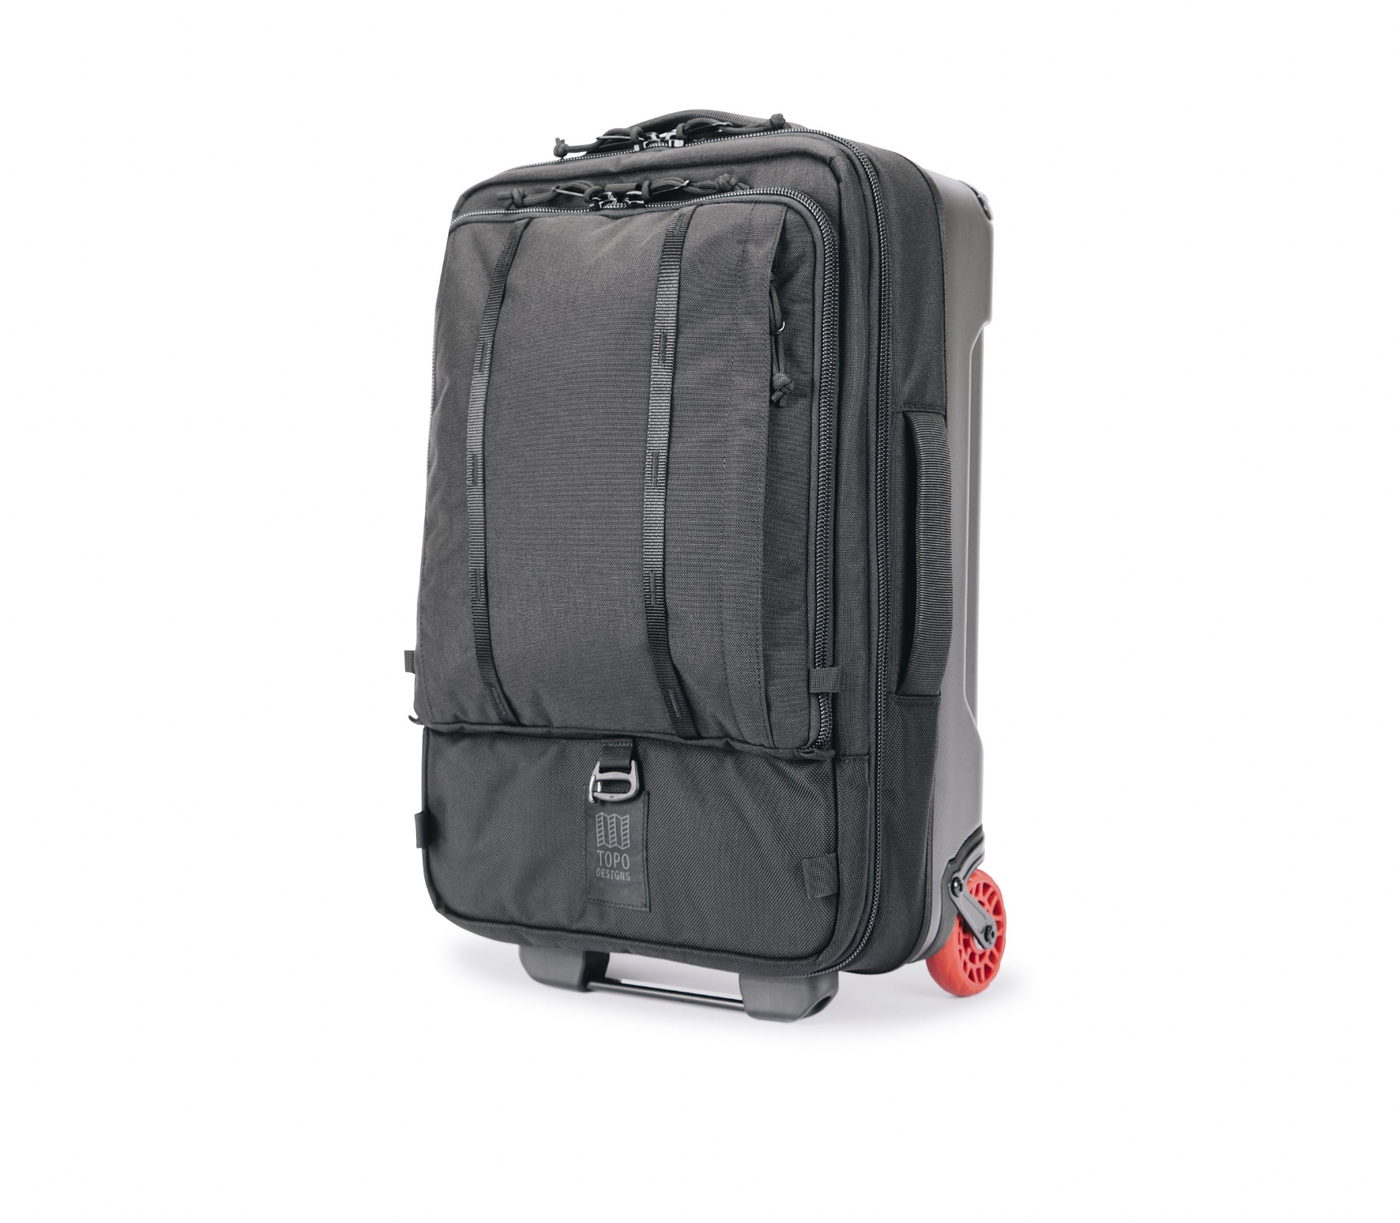 Global Travel Bag Roller - 44L